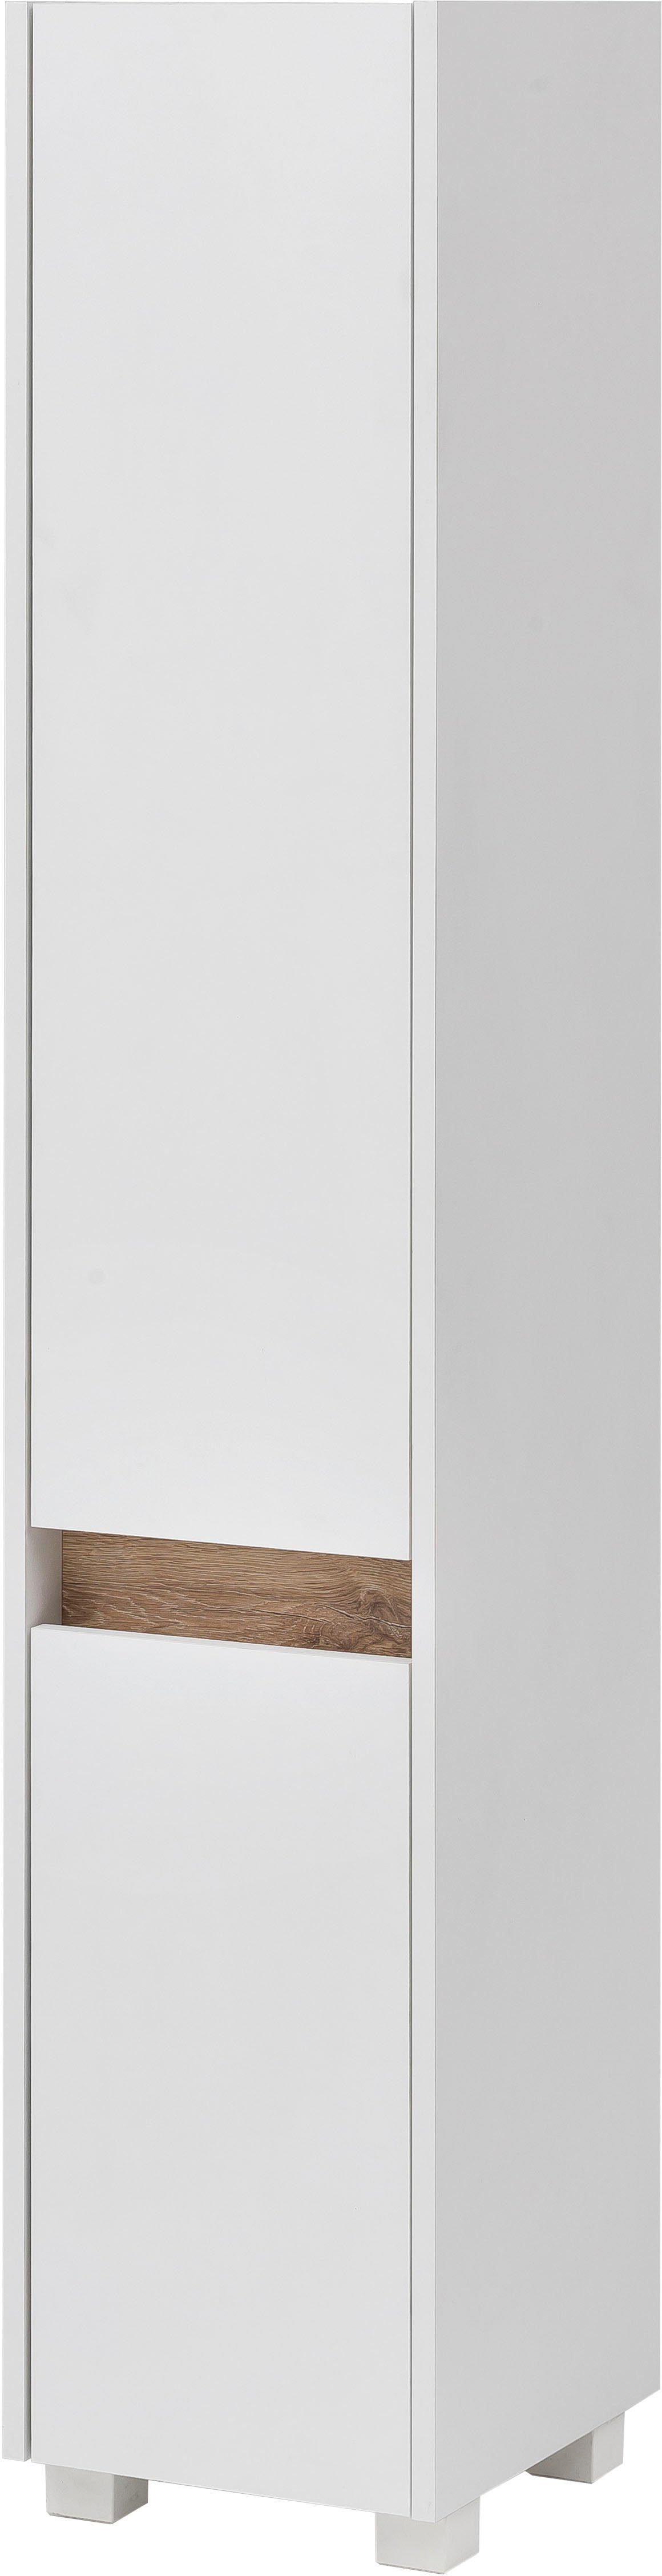 Schildmeyer Hochschrank Cosmo Höhe 164,5 cm, Badezimmerschrank, Blende im modernen Wildeiche-Look weiß | weiß